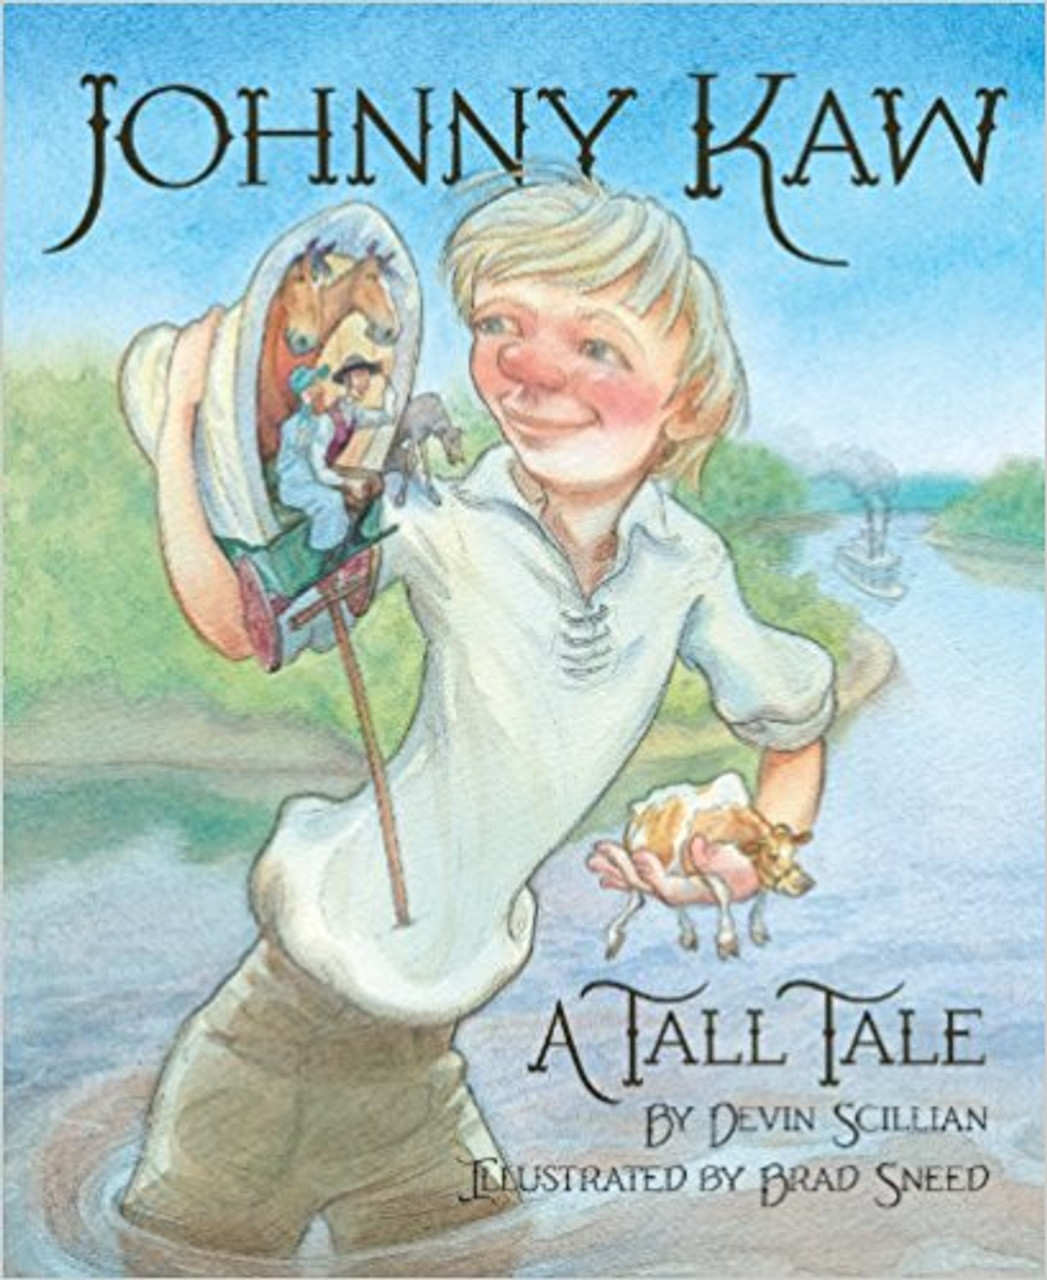 Johnny Kaw: A Tall Tale by David Scillian